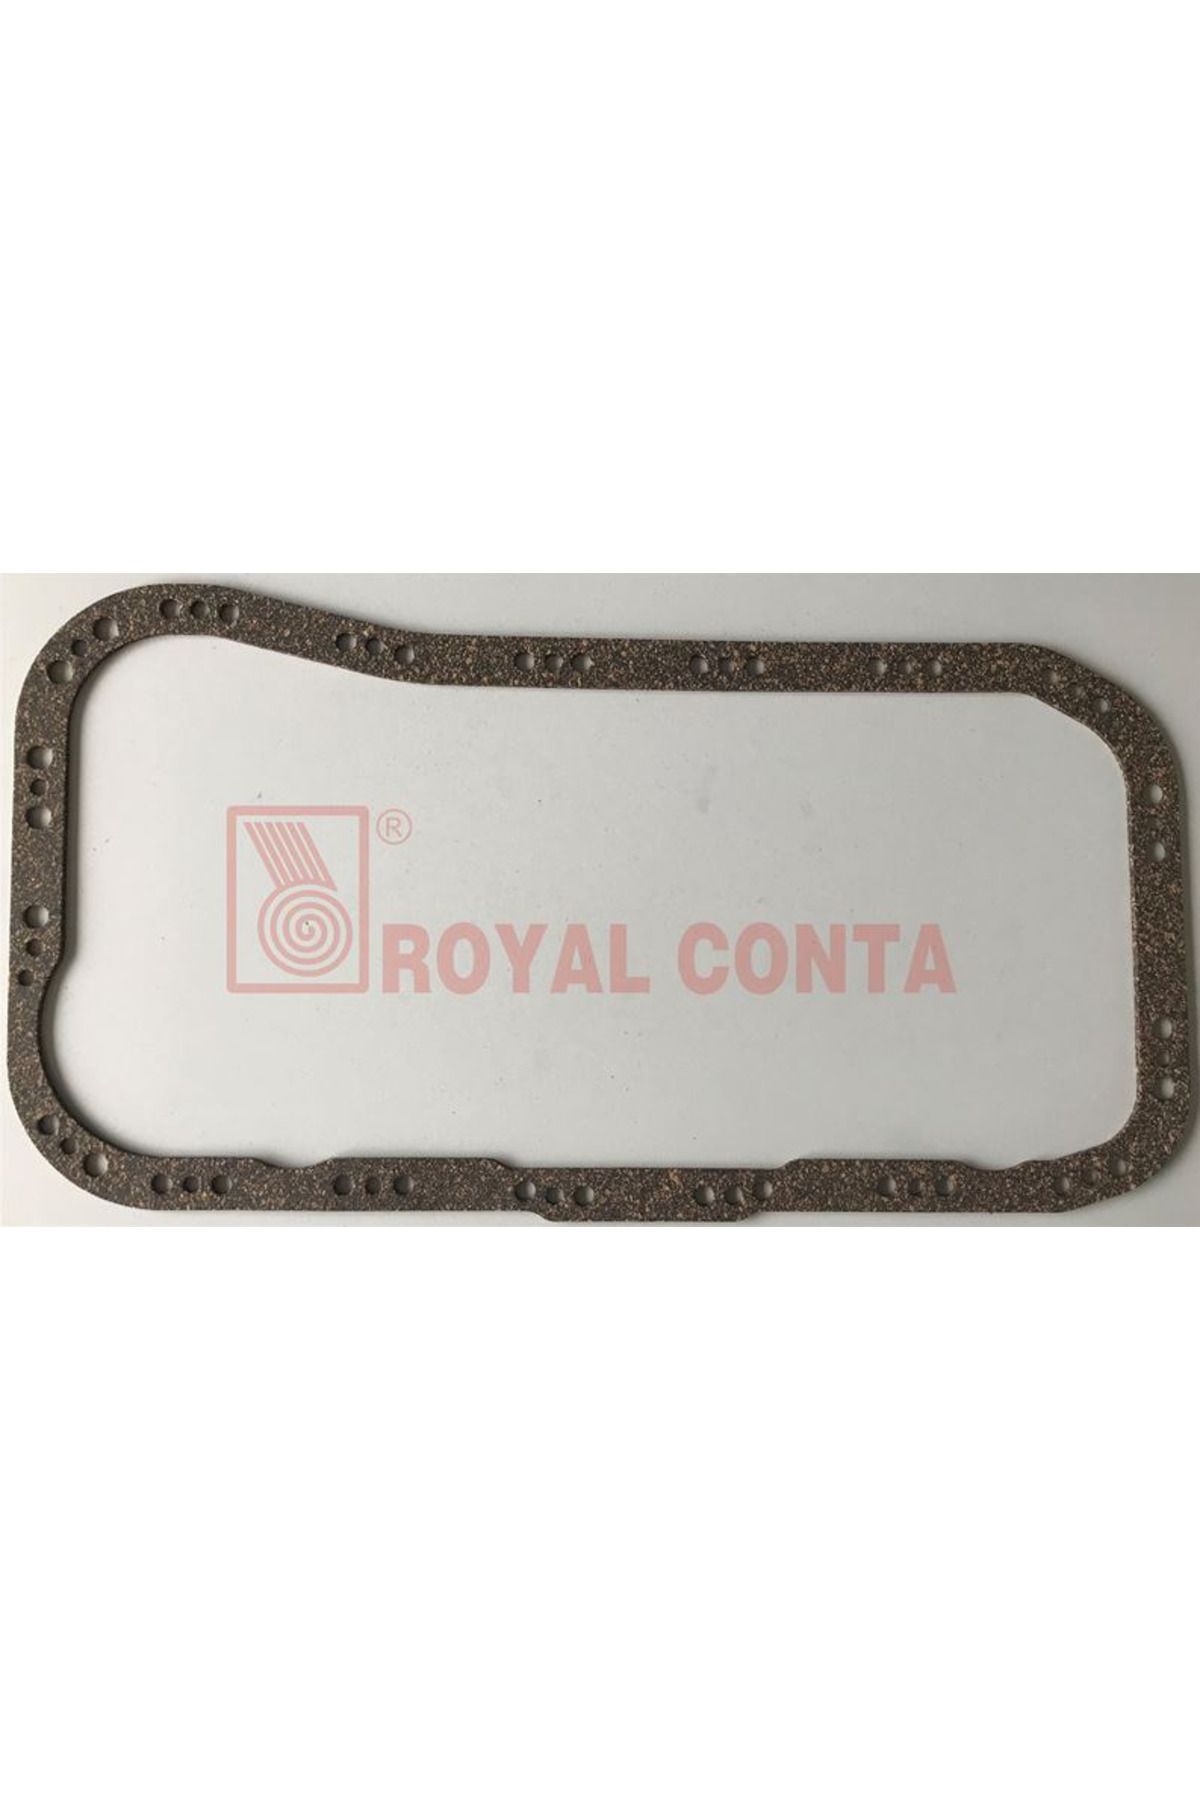 Royal KARTER CONTASI TEMPRA 2000 CC K. MANTAR STAND. 7646248